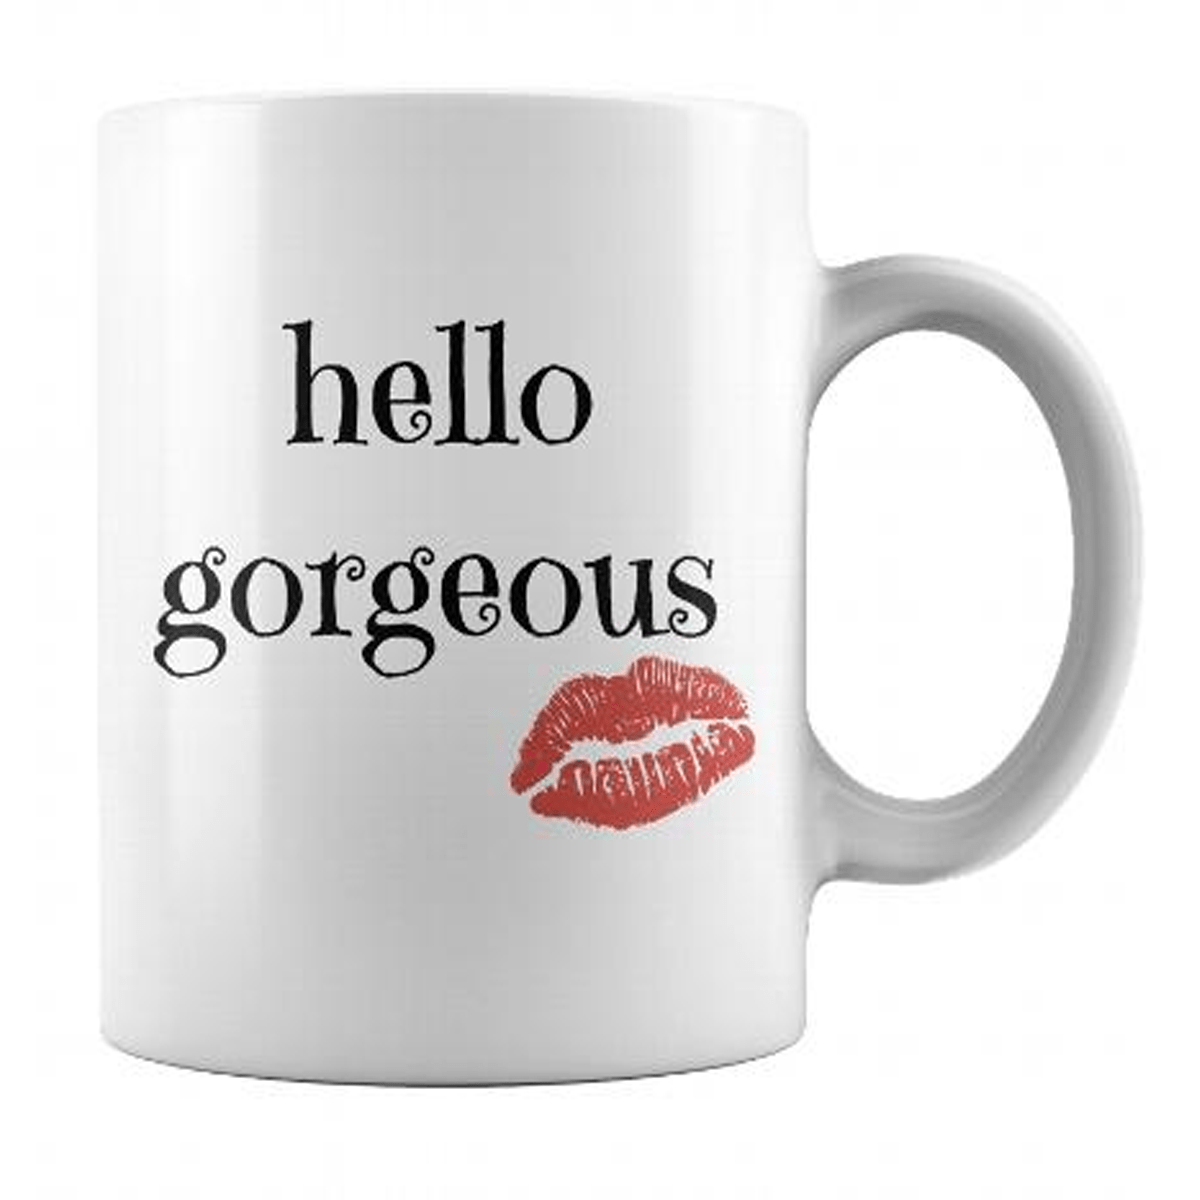 Hello Gorgeous - 11 Oz Coffee Mug